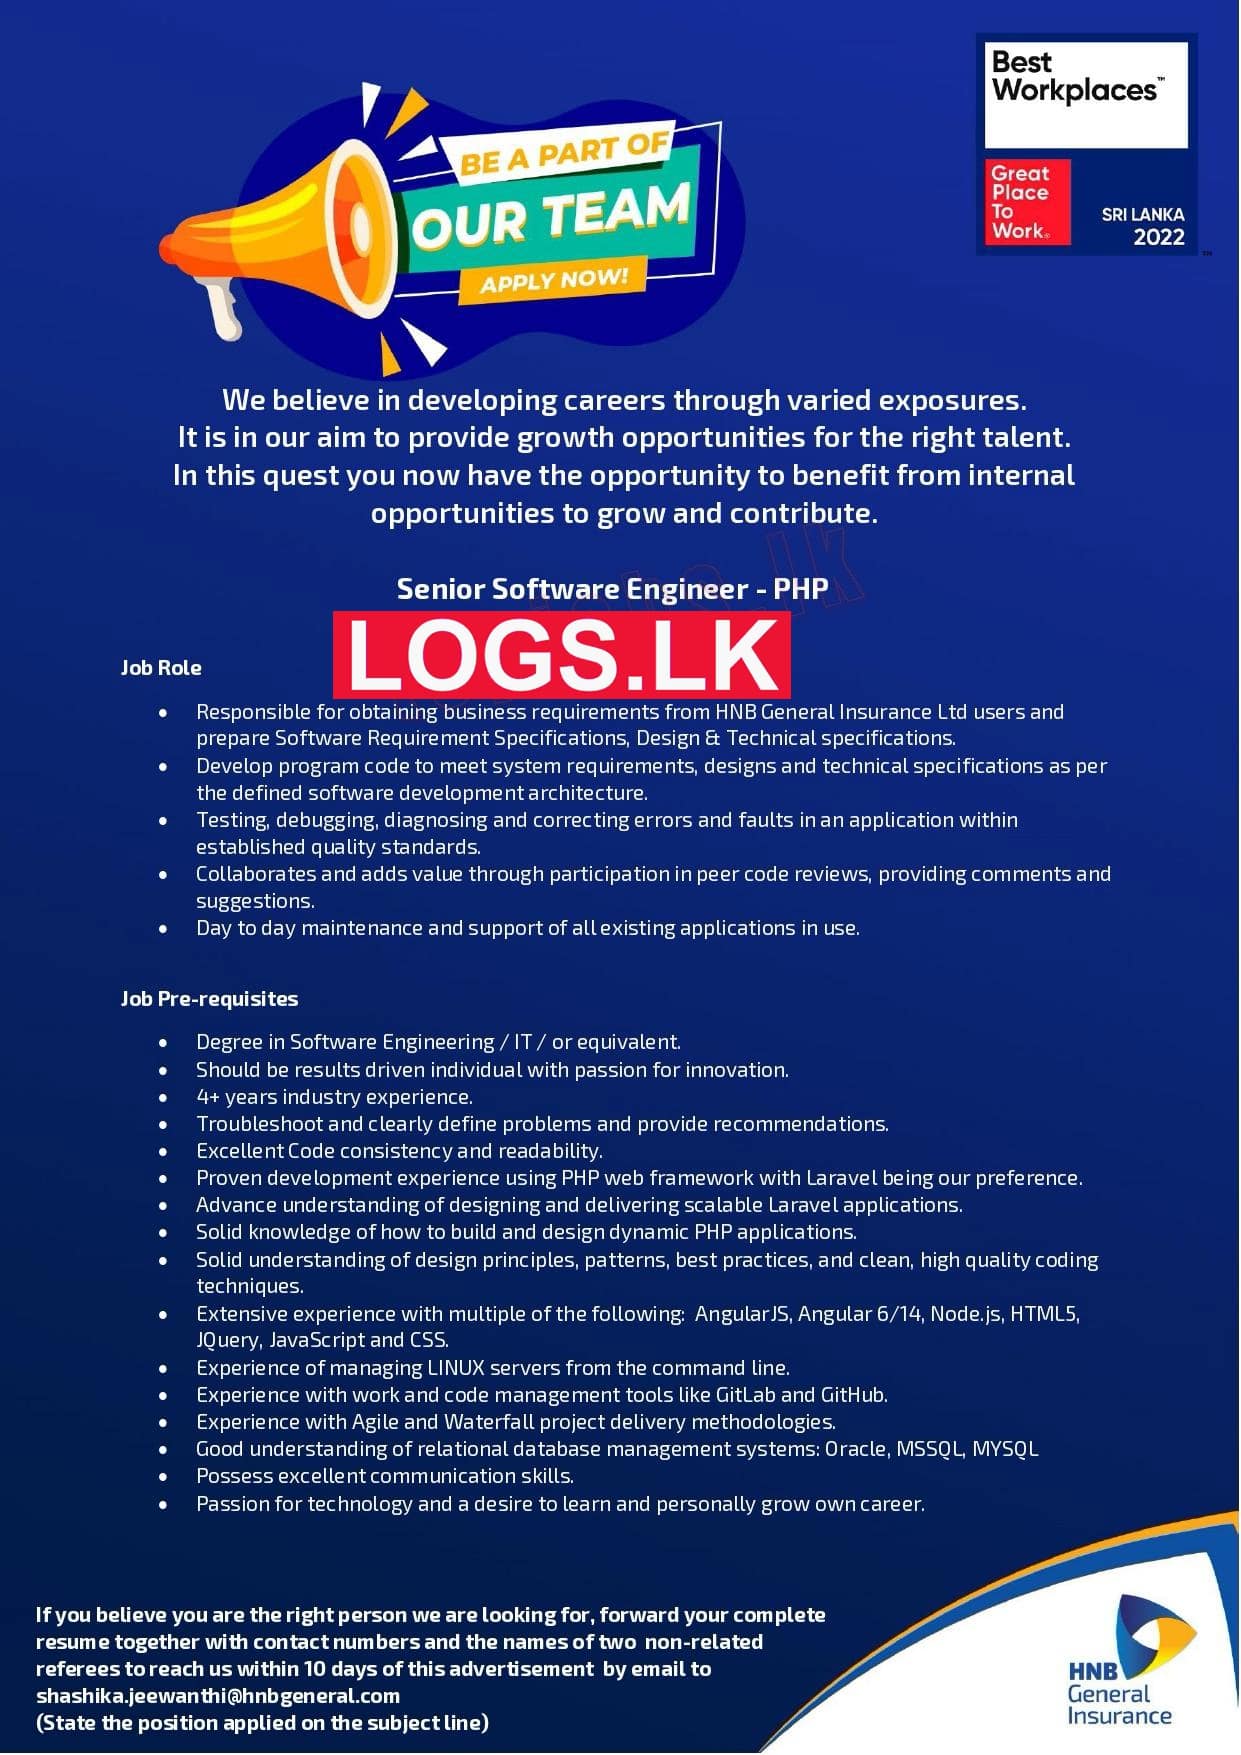 Senior Software Engineer (PHP) Job at HNB General Insurance Job Vacancies in Sri Lanka